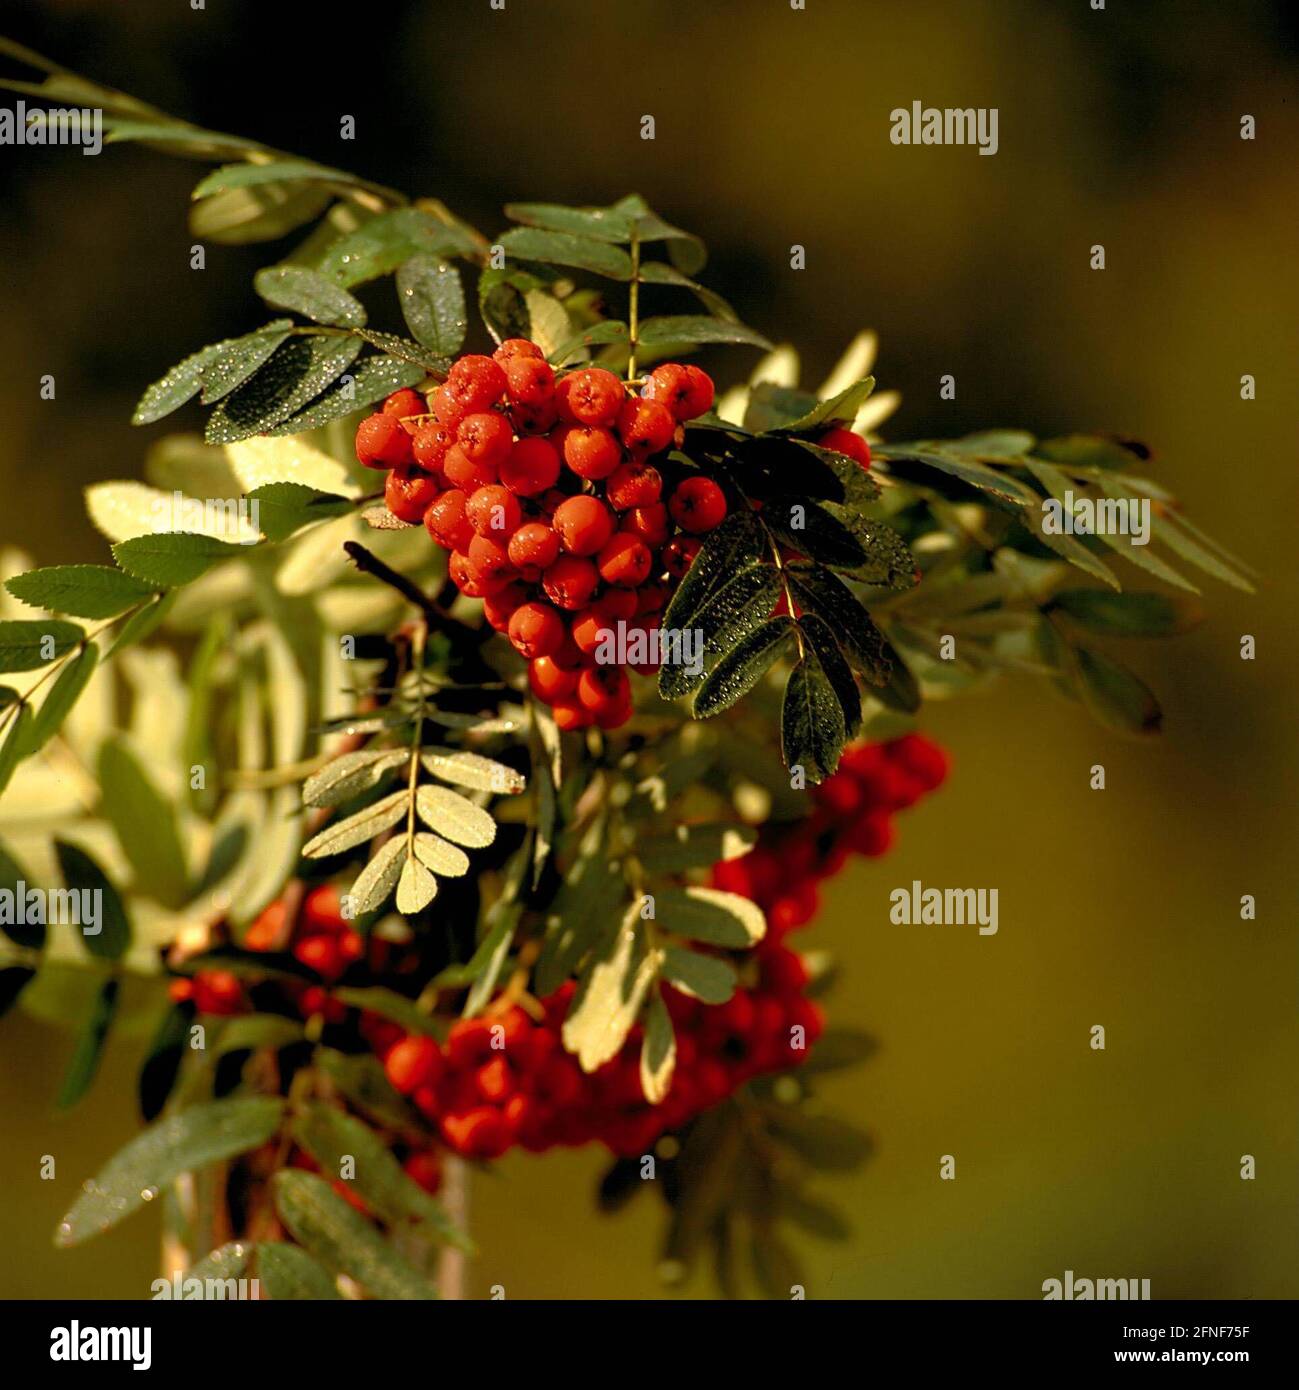 Le rowan (Sorbus aucuparia L), arbre de l'année 1997, est une espèce d'arbre très robuste qui colonise presque tous les types de forêt et de sol. [traduction automatique] Banque D'Images